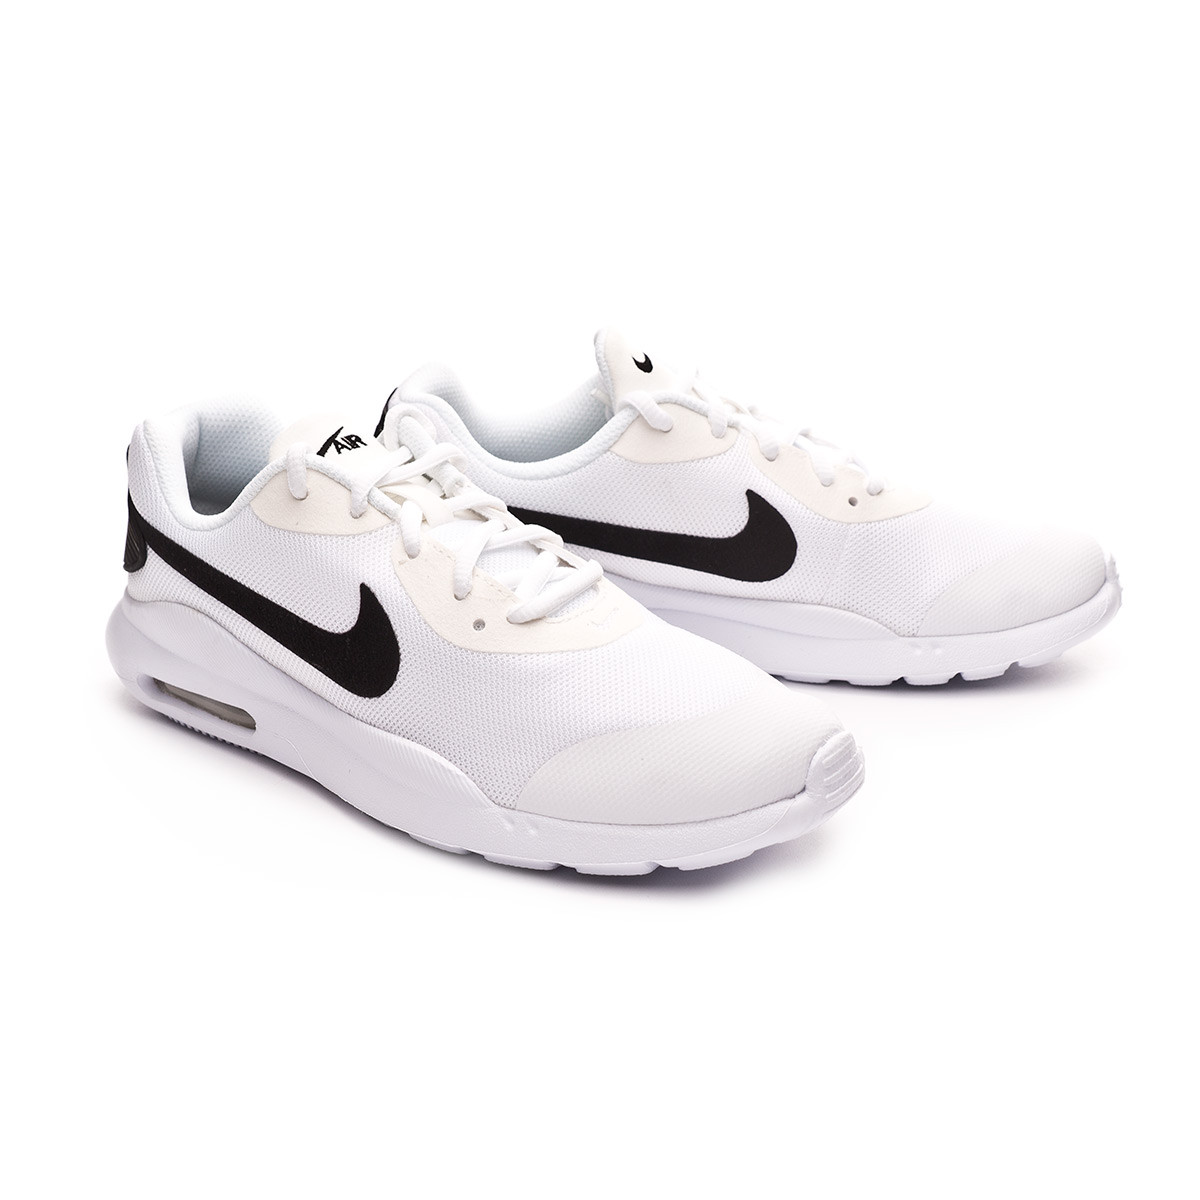 venta de tenis air max Nike online – Compra productos Nike baratos